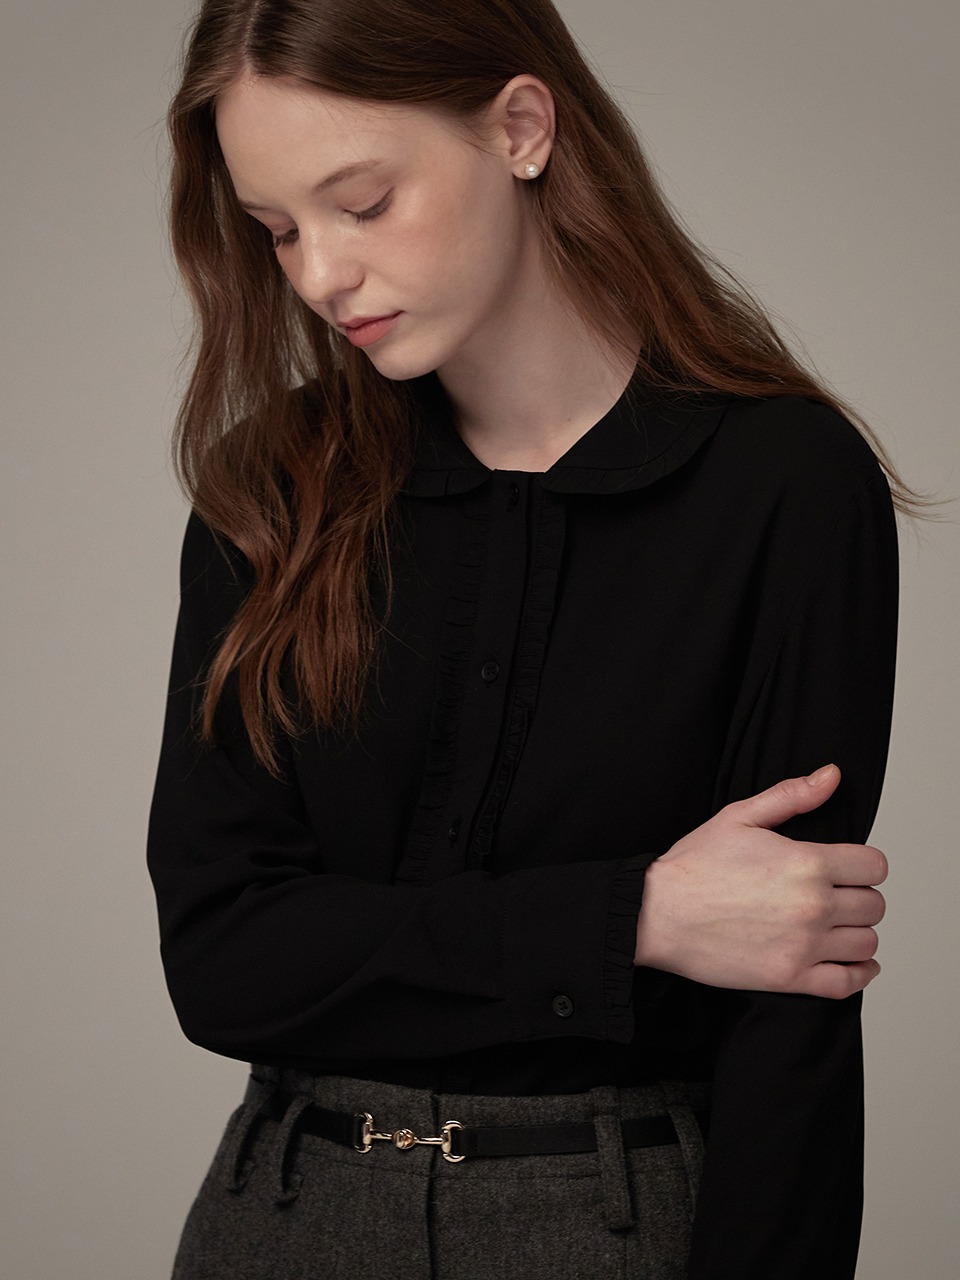 Crape frill detail blouse - Black